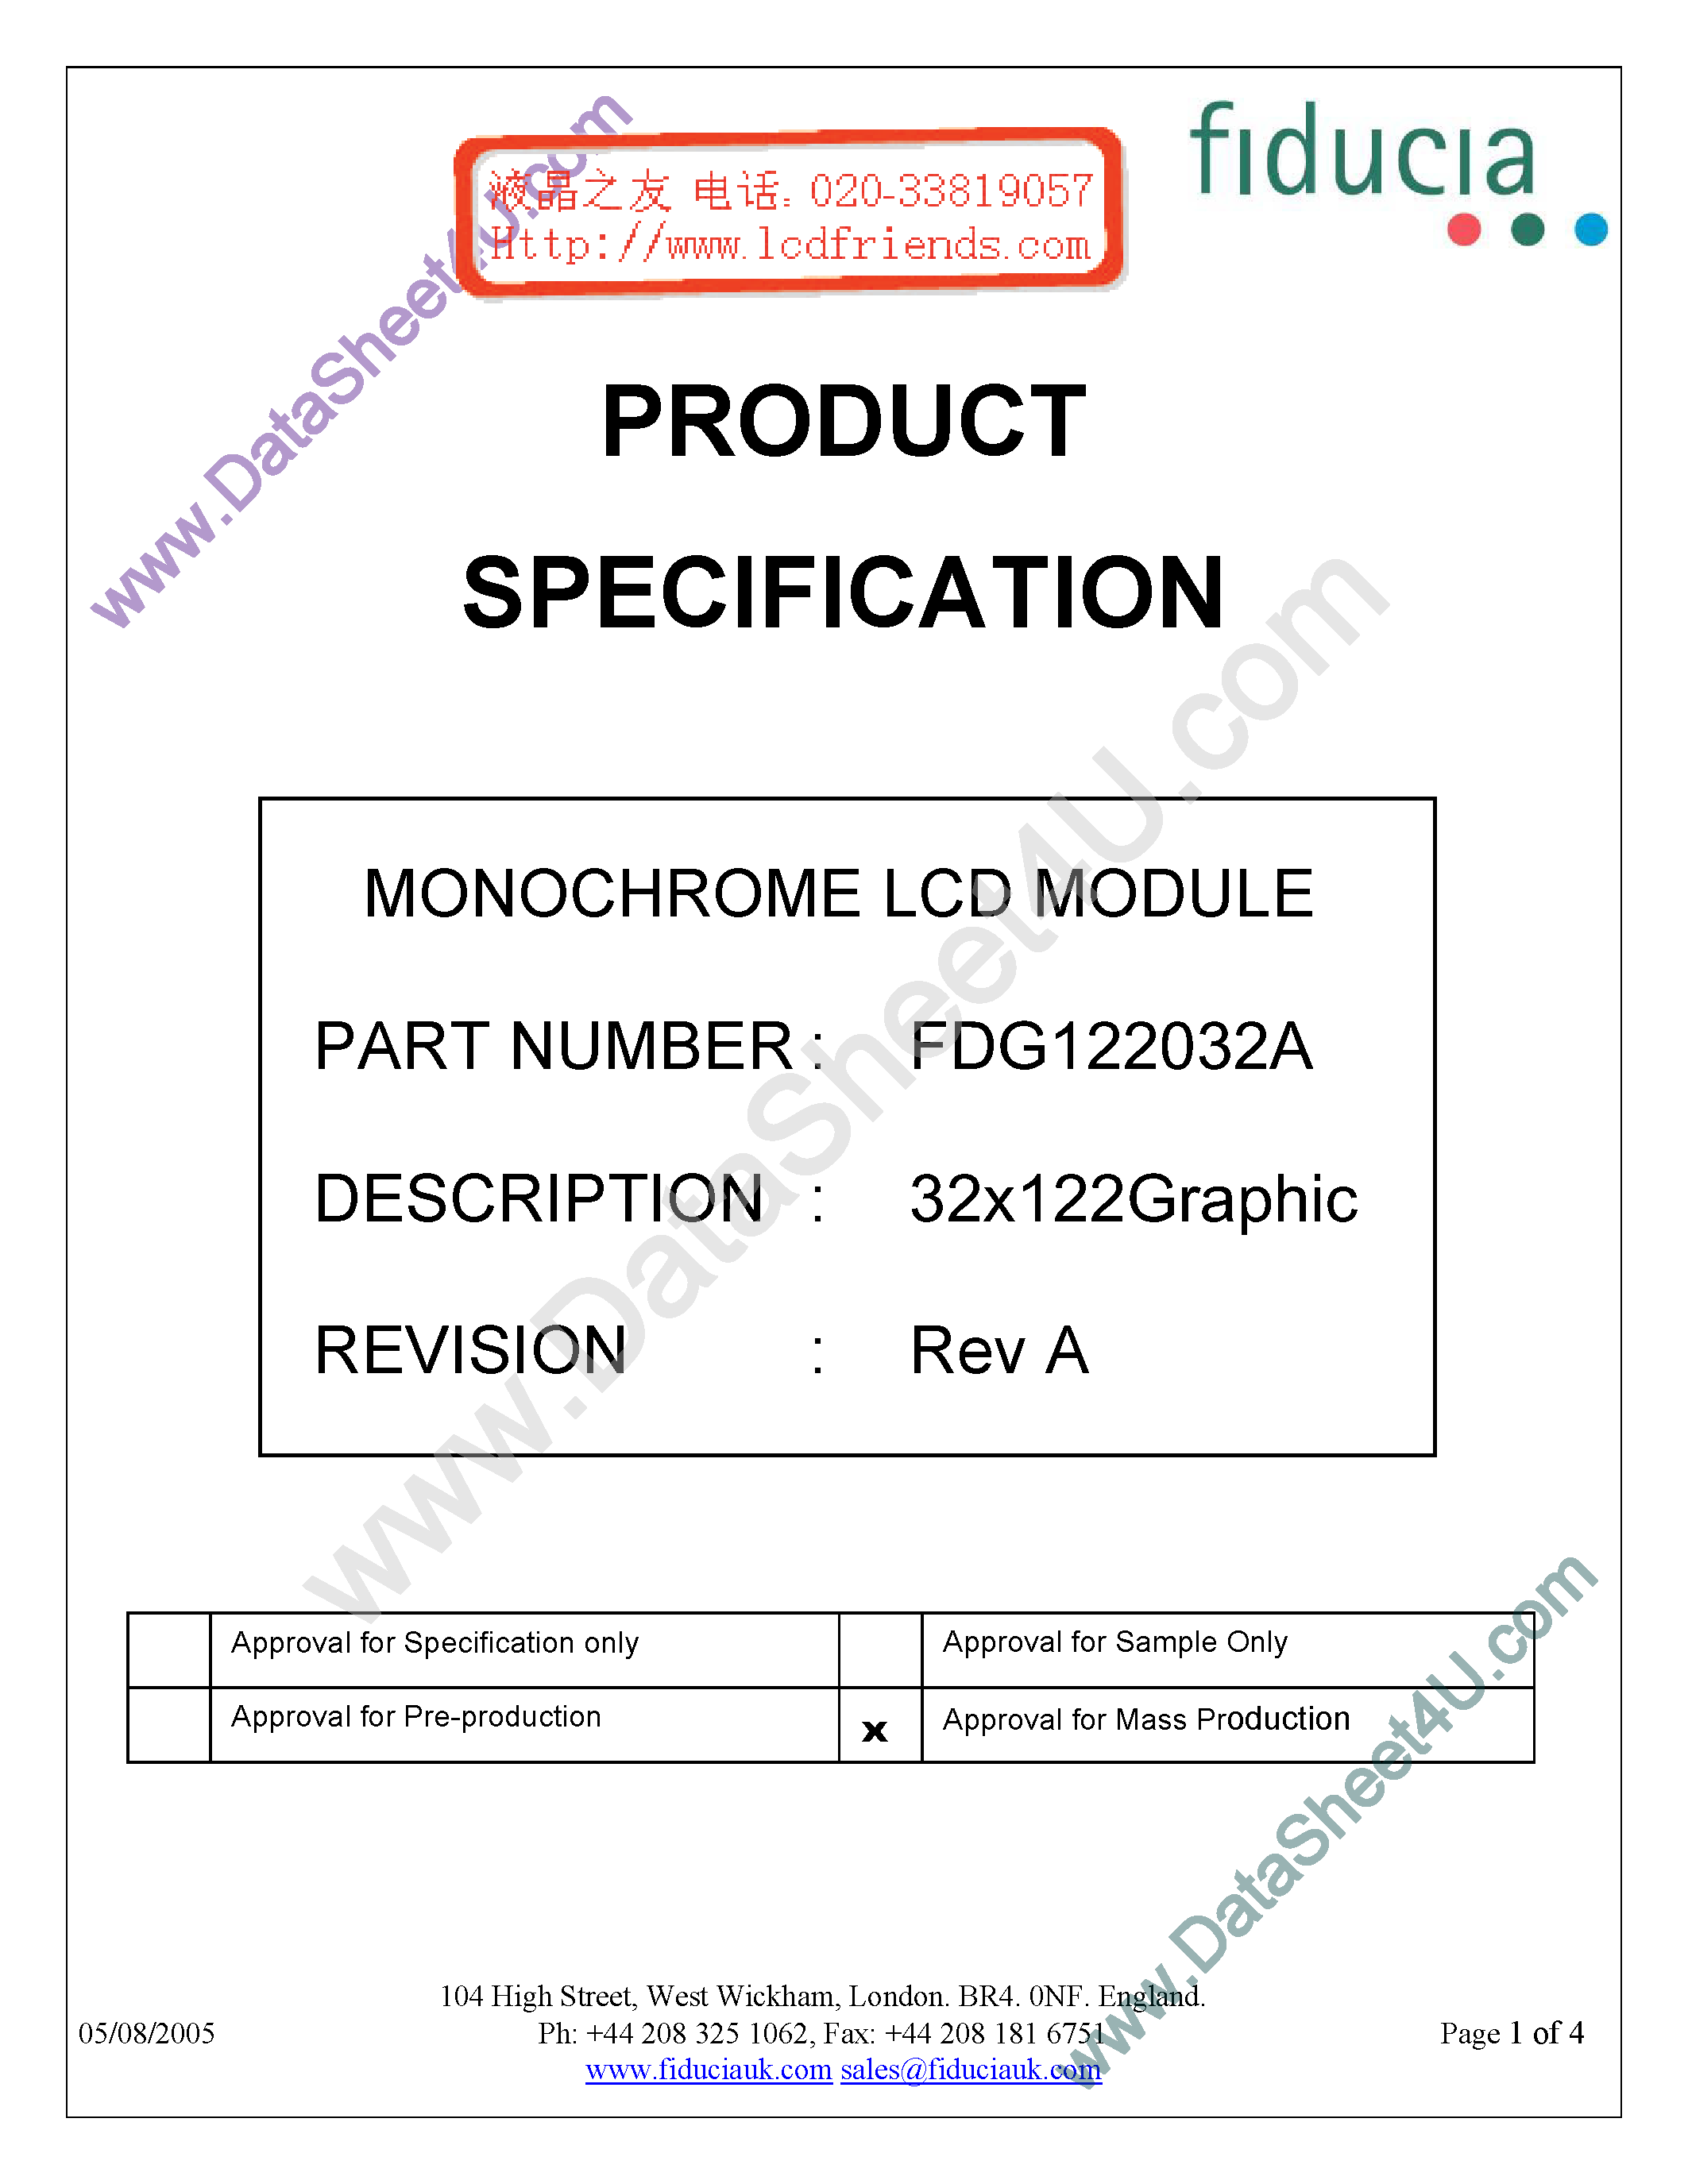 Даташит FDG122032A-Monochrome Lcd Module страница 1